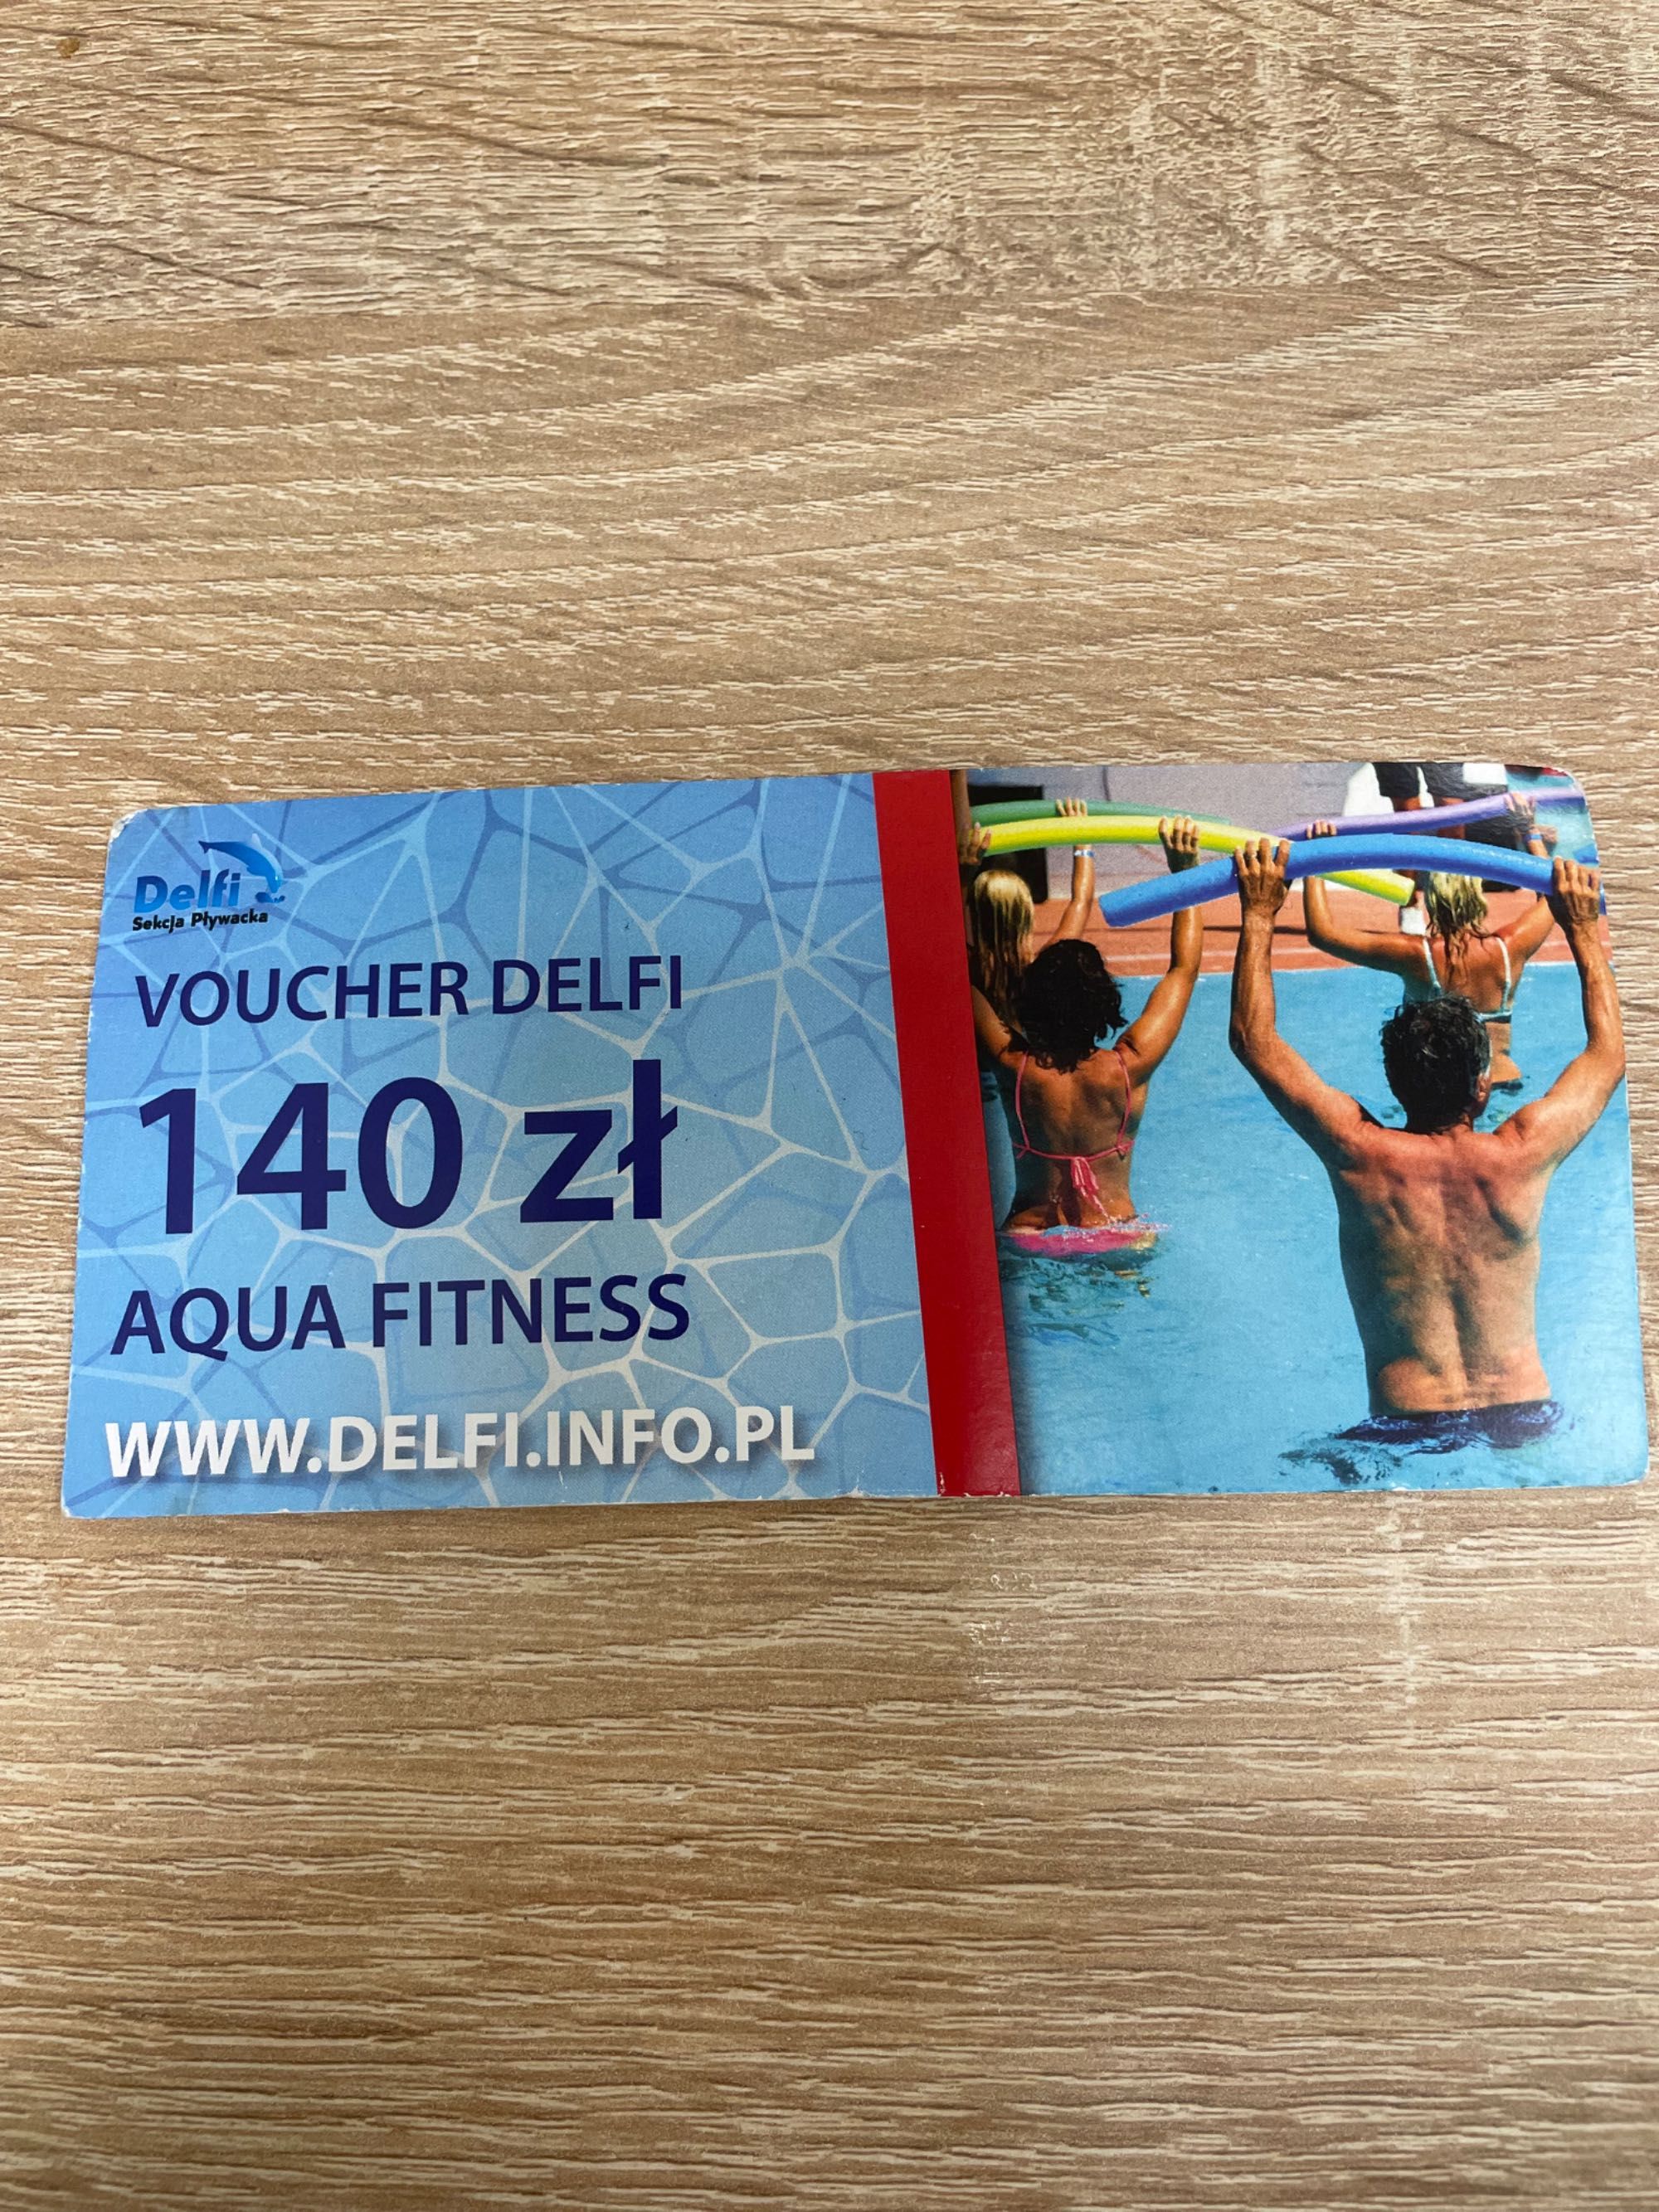 Voucher Aqua fitness Delfi